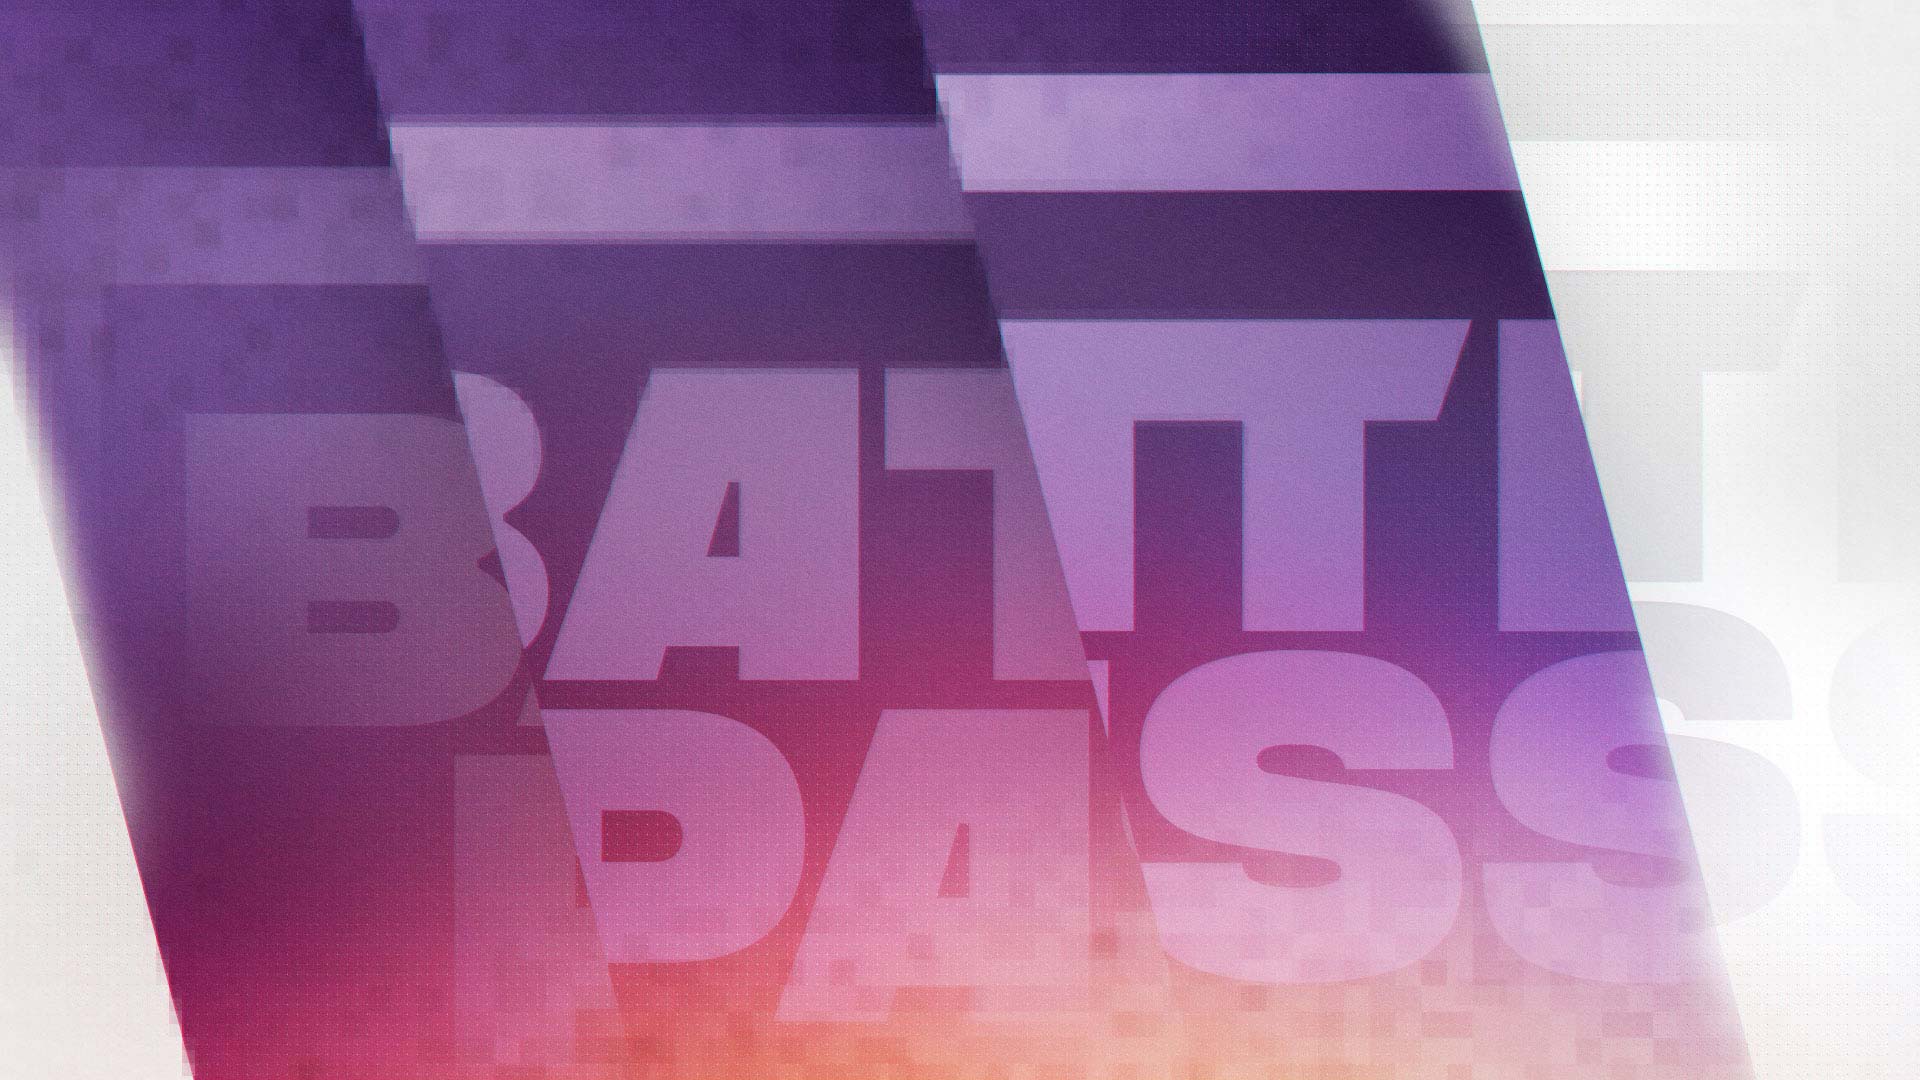 BATTLE PASS